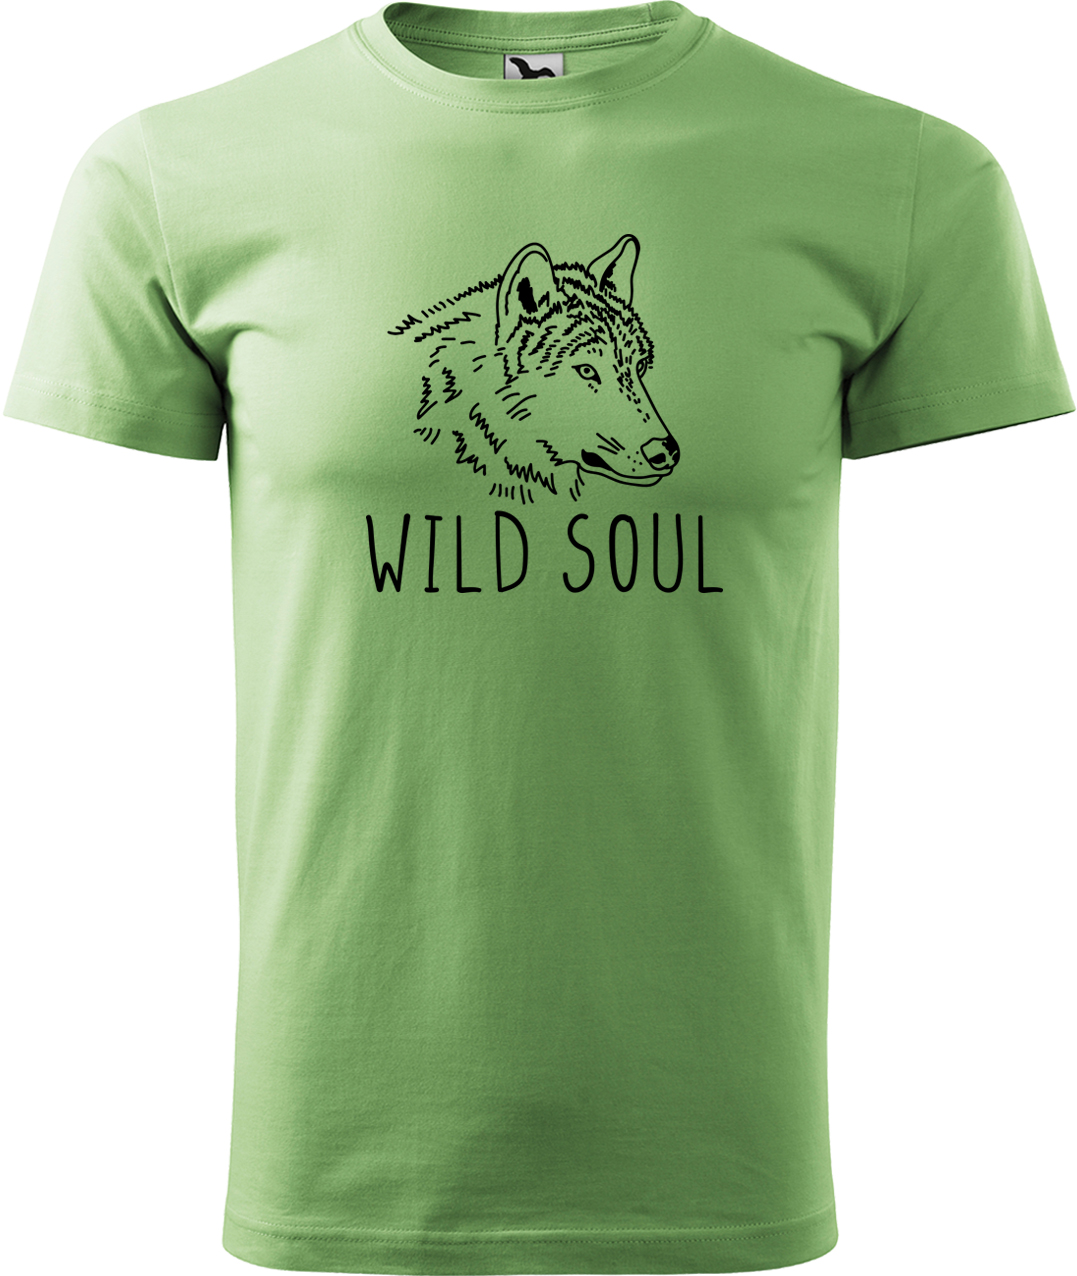 Pánské tričko s vlkem - Wild soul Velikost: L, Barva: Trávově zelená (39), Střih: pánský